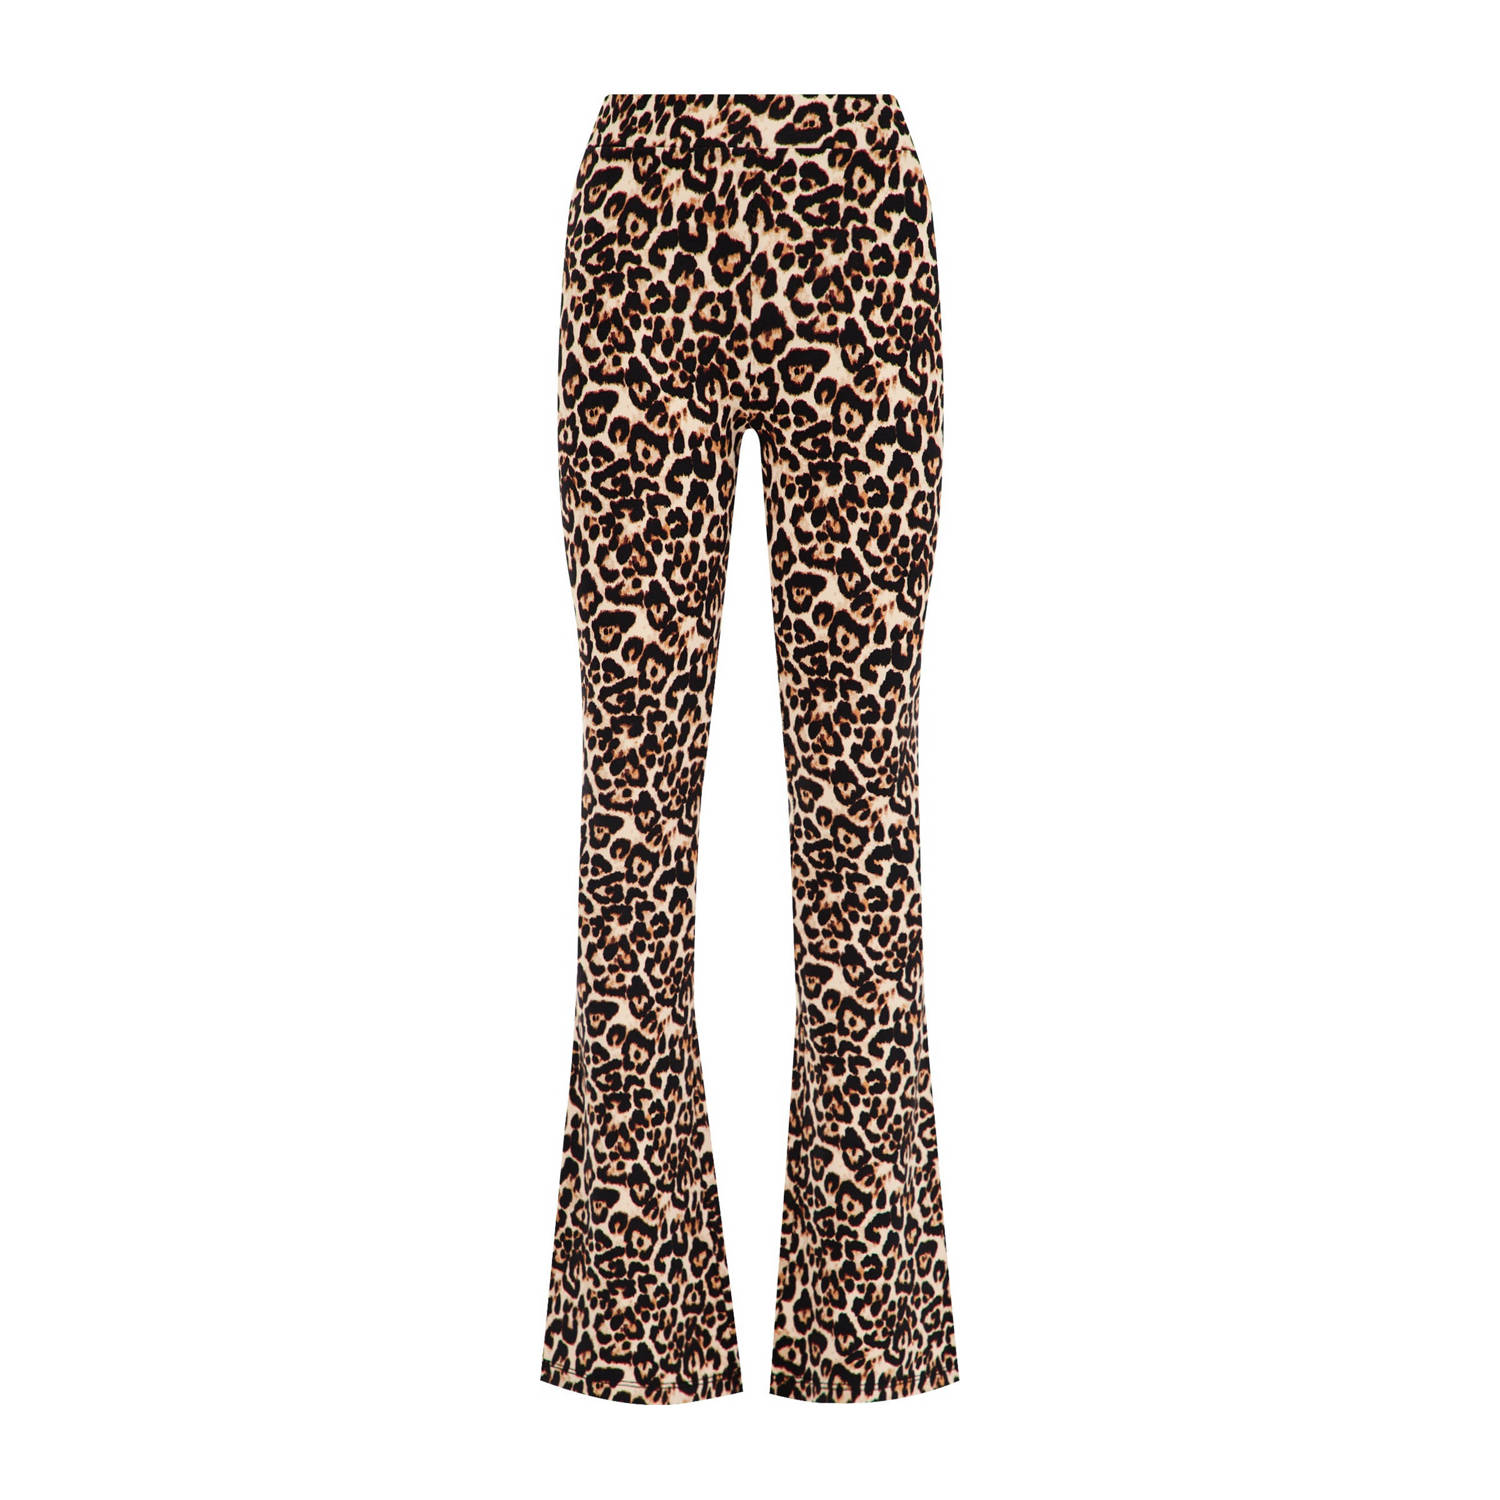 WE Fashion broek met panterprint bruin lichtbruin zwart Meisjes Viscose (duurzaam materiaal) 92